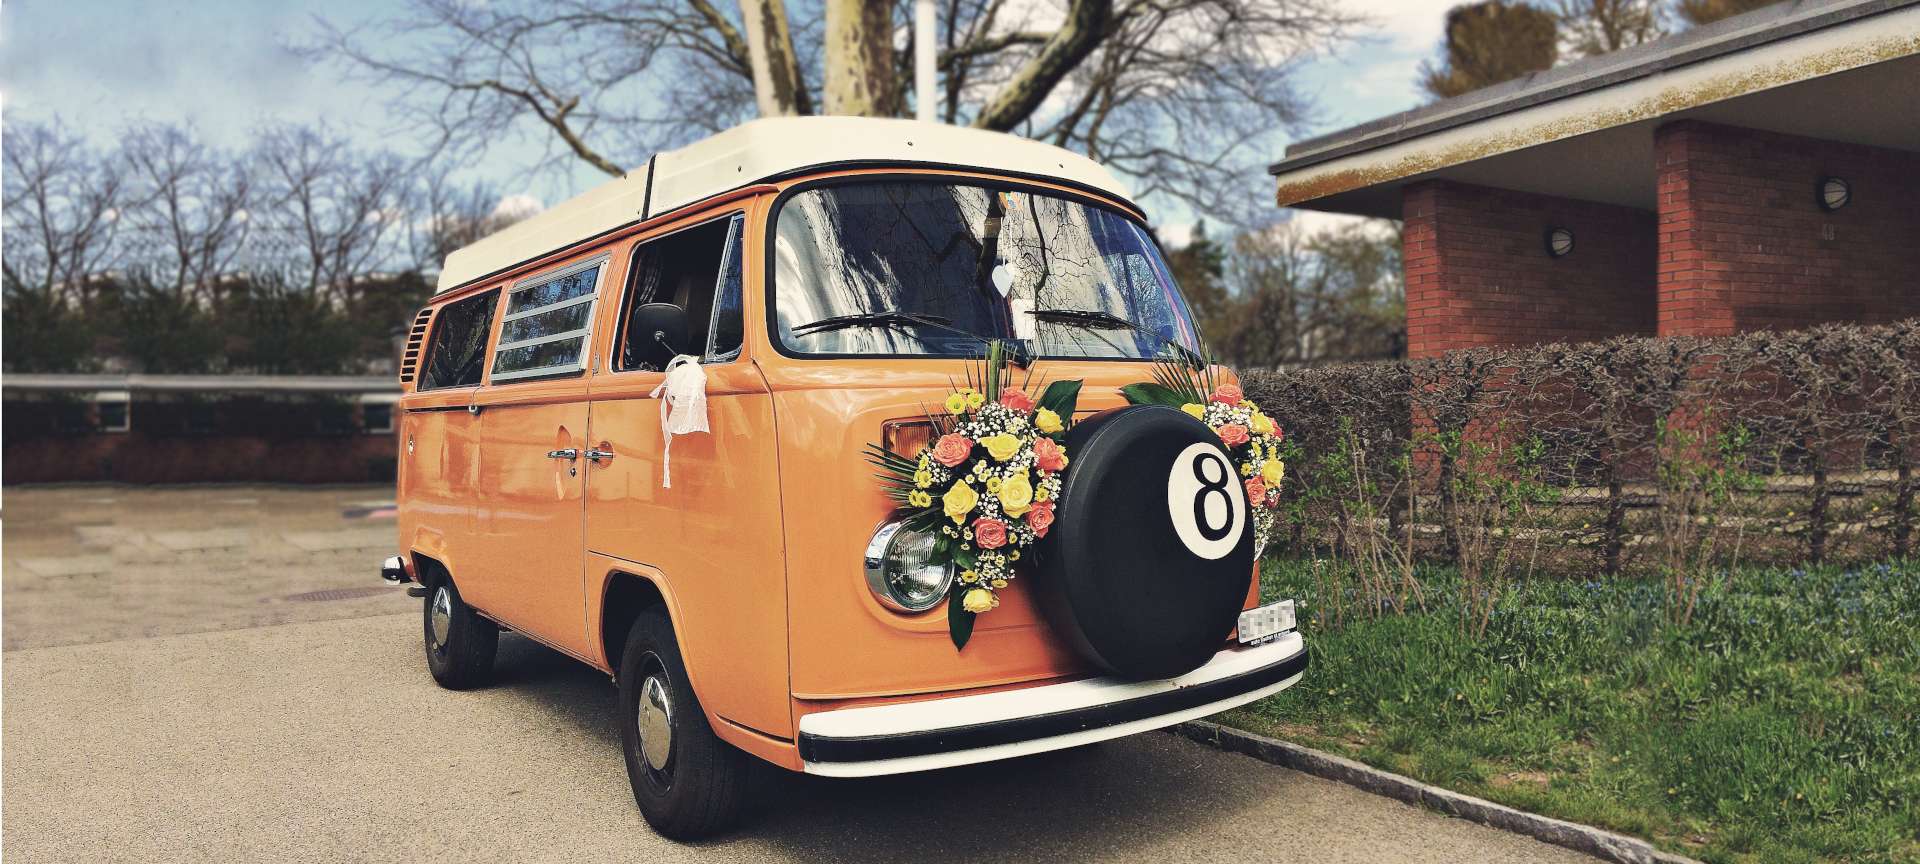 Flower power - Décoration florale sur voiture de collection bus VW loué comme voiture de mariage